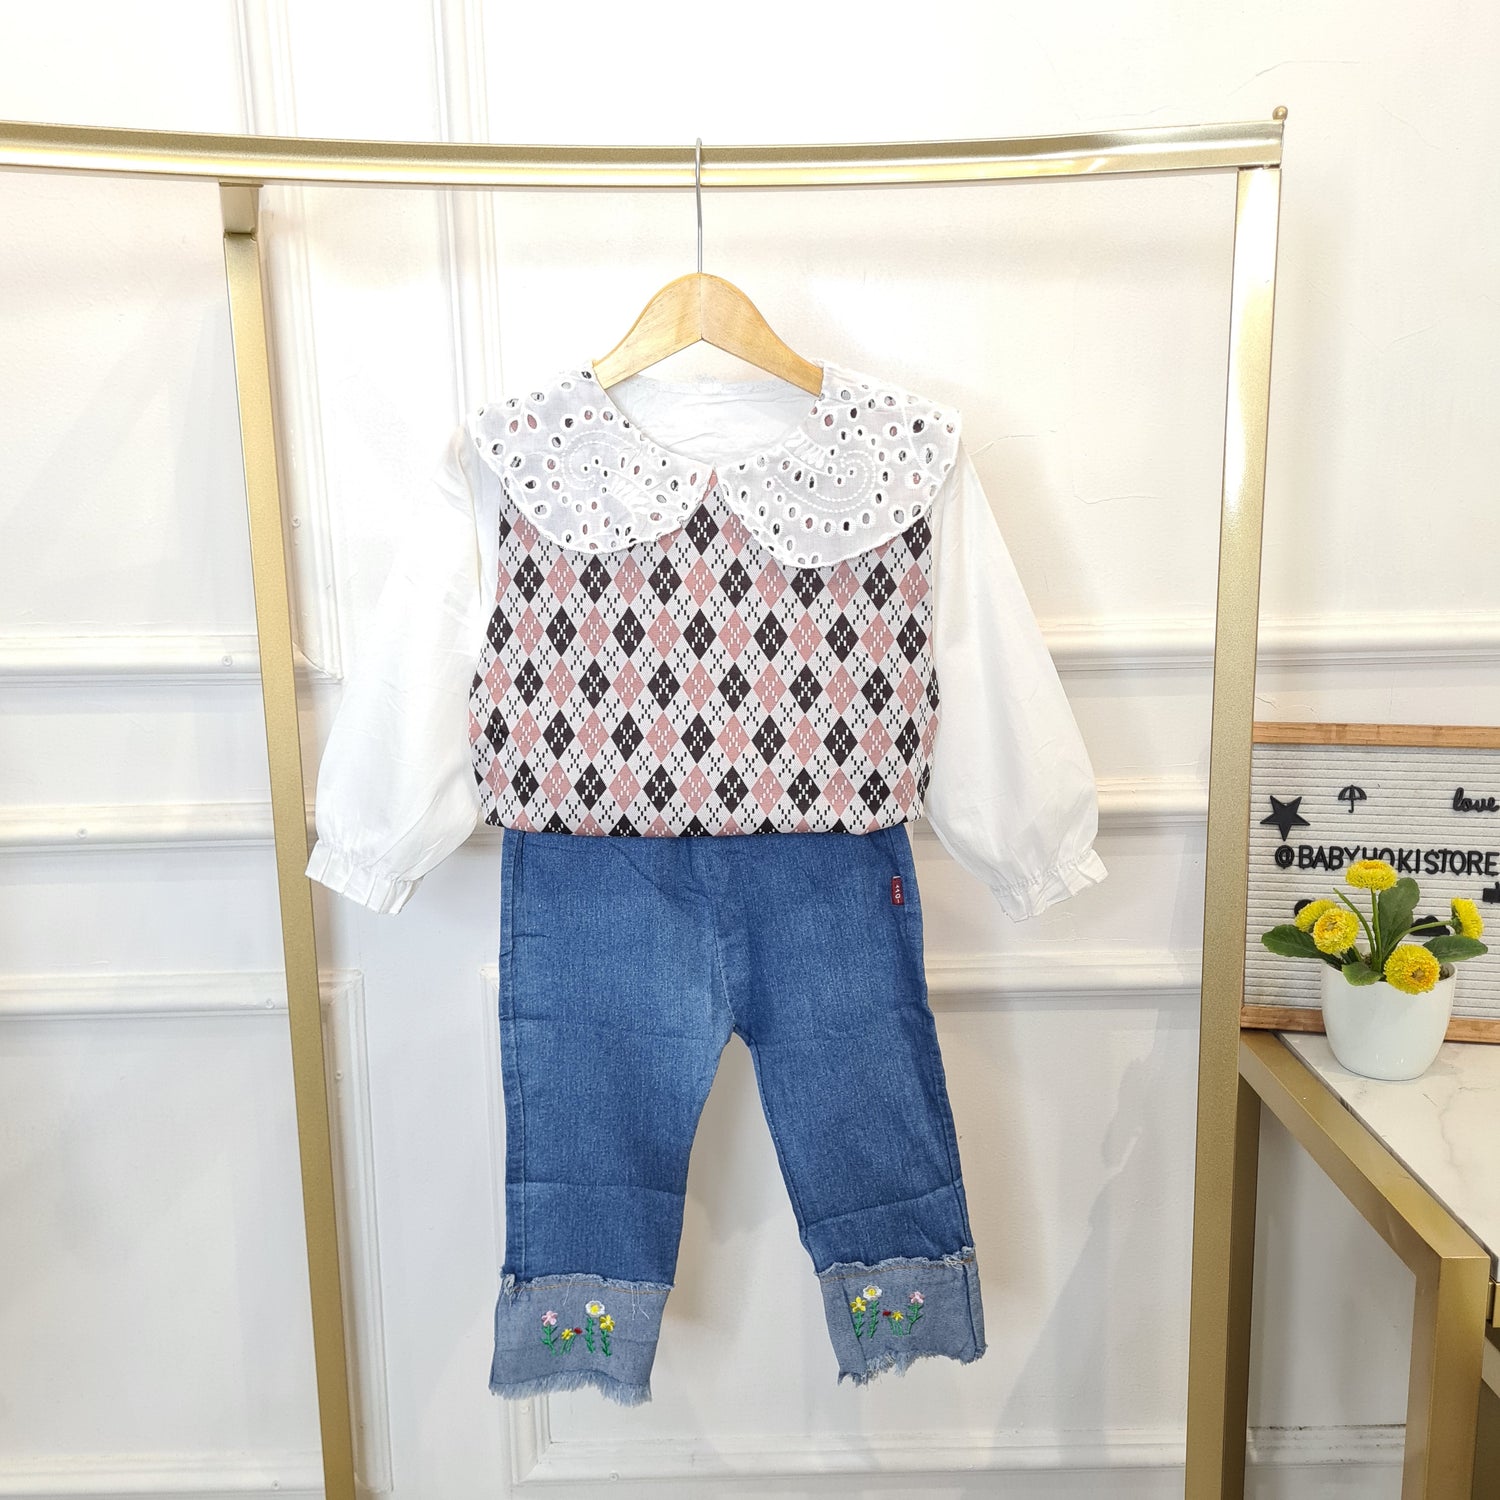 [340420-V1] - Setelan Baju Blouse Celana Jeans Panjang Fashion Anak Perempuan - Motif Flower Side